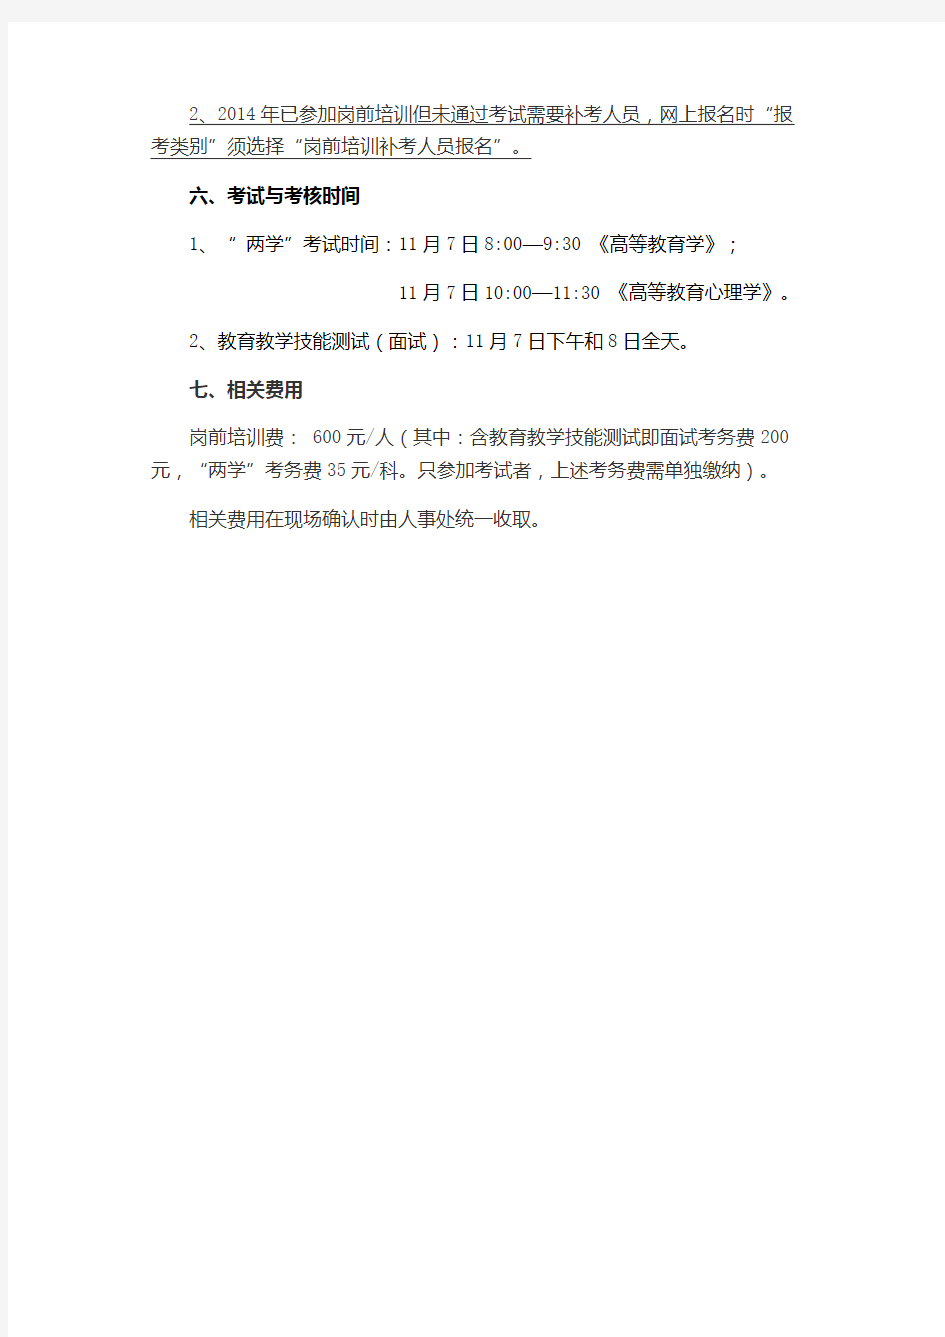 2015年河北省高校教师岗前培训及教师资格认定考试与考核工